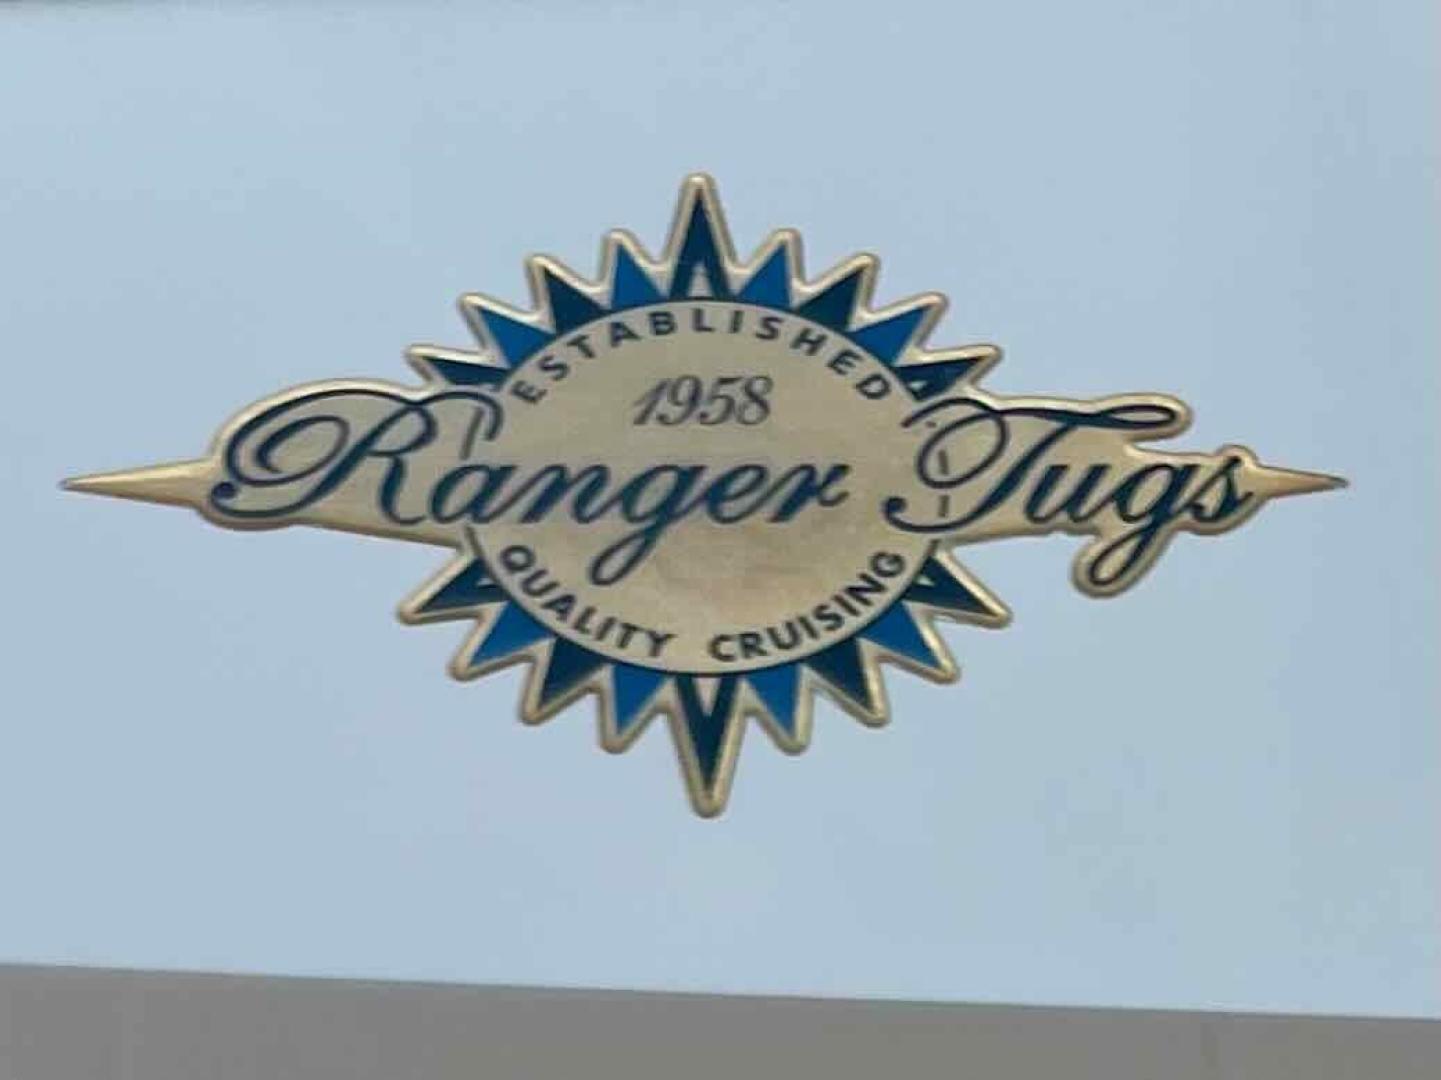 2013 Ranger Tugs R-31 CB